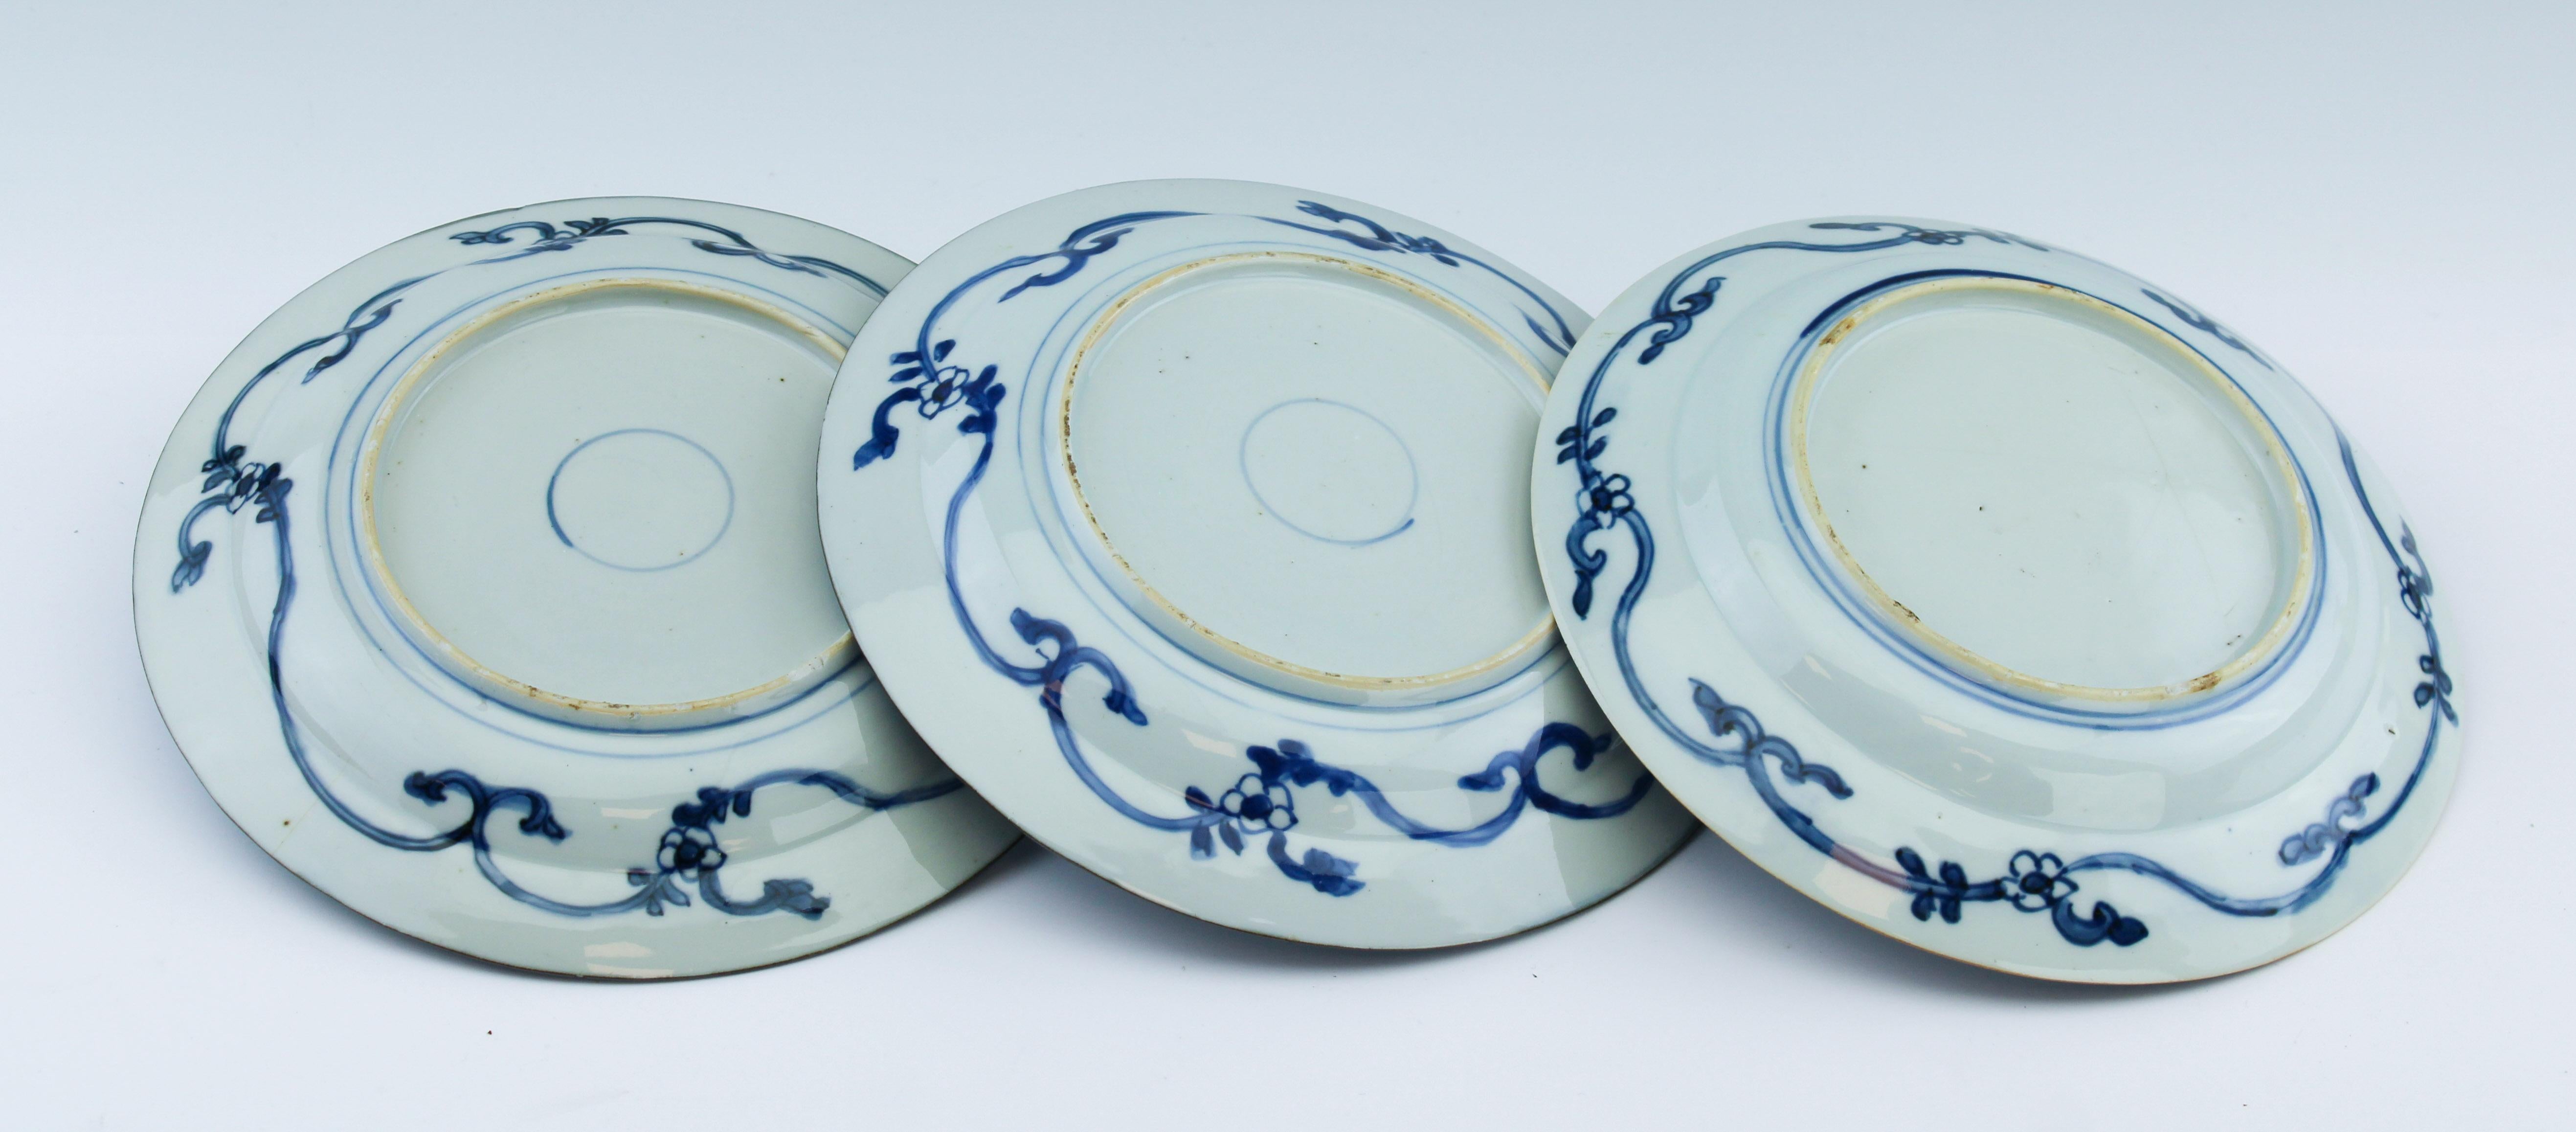 Qing Ensemble d'assiettes plates Kangxi Kraak bleu et blanc en porcelaine chinoise ancienne n° 6 du 18ème siècle